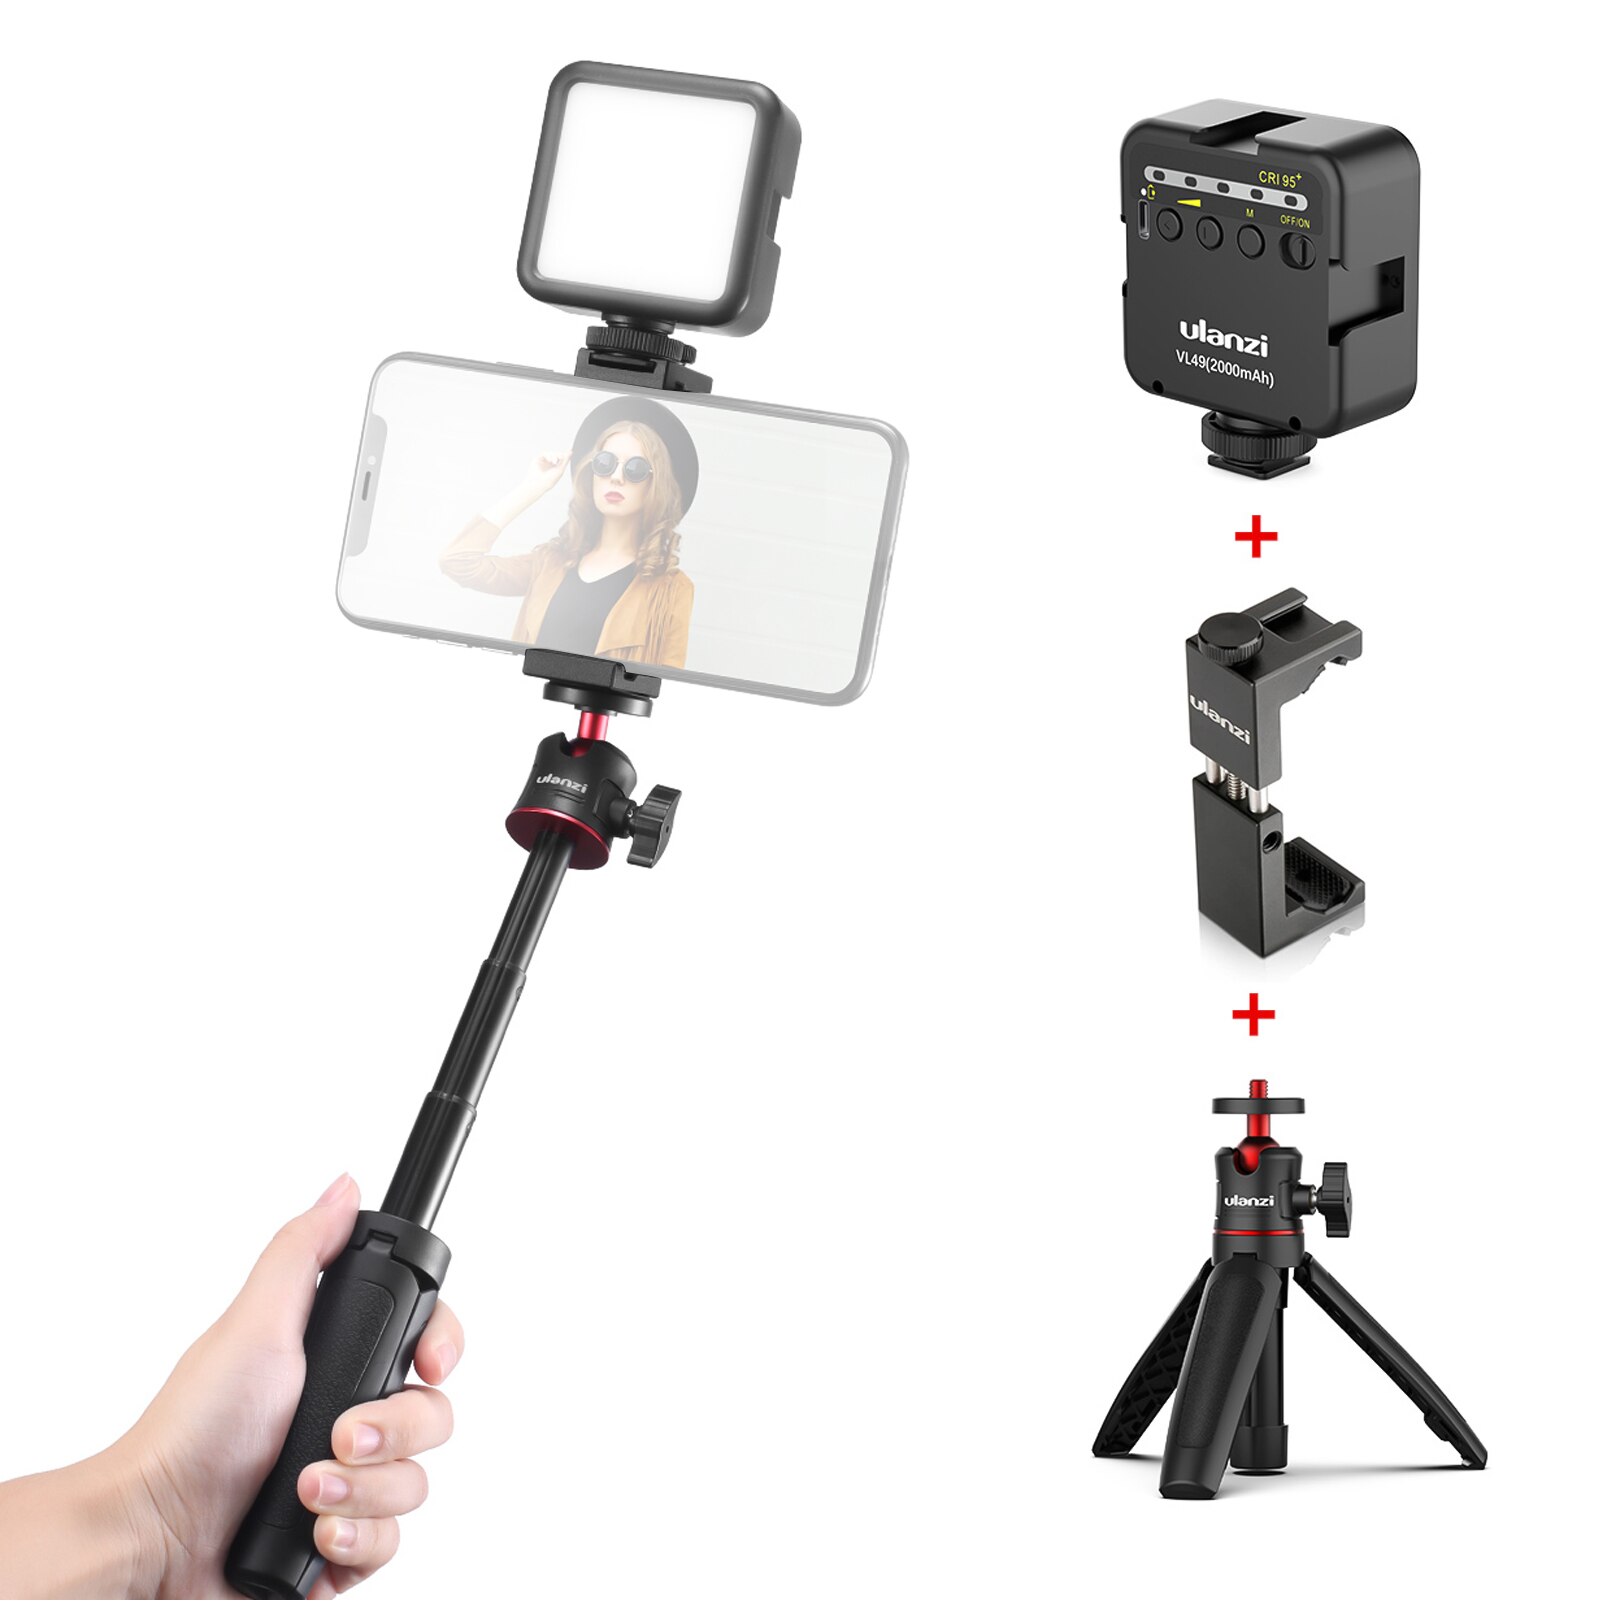 Ulanzi telefon video vlog kit med selfie stick stativ led fyld lys telefon klemmeholder universal 1/4 koldsko montering